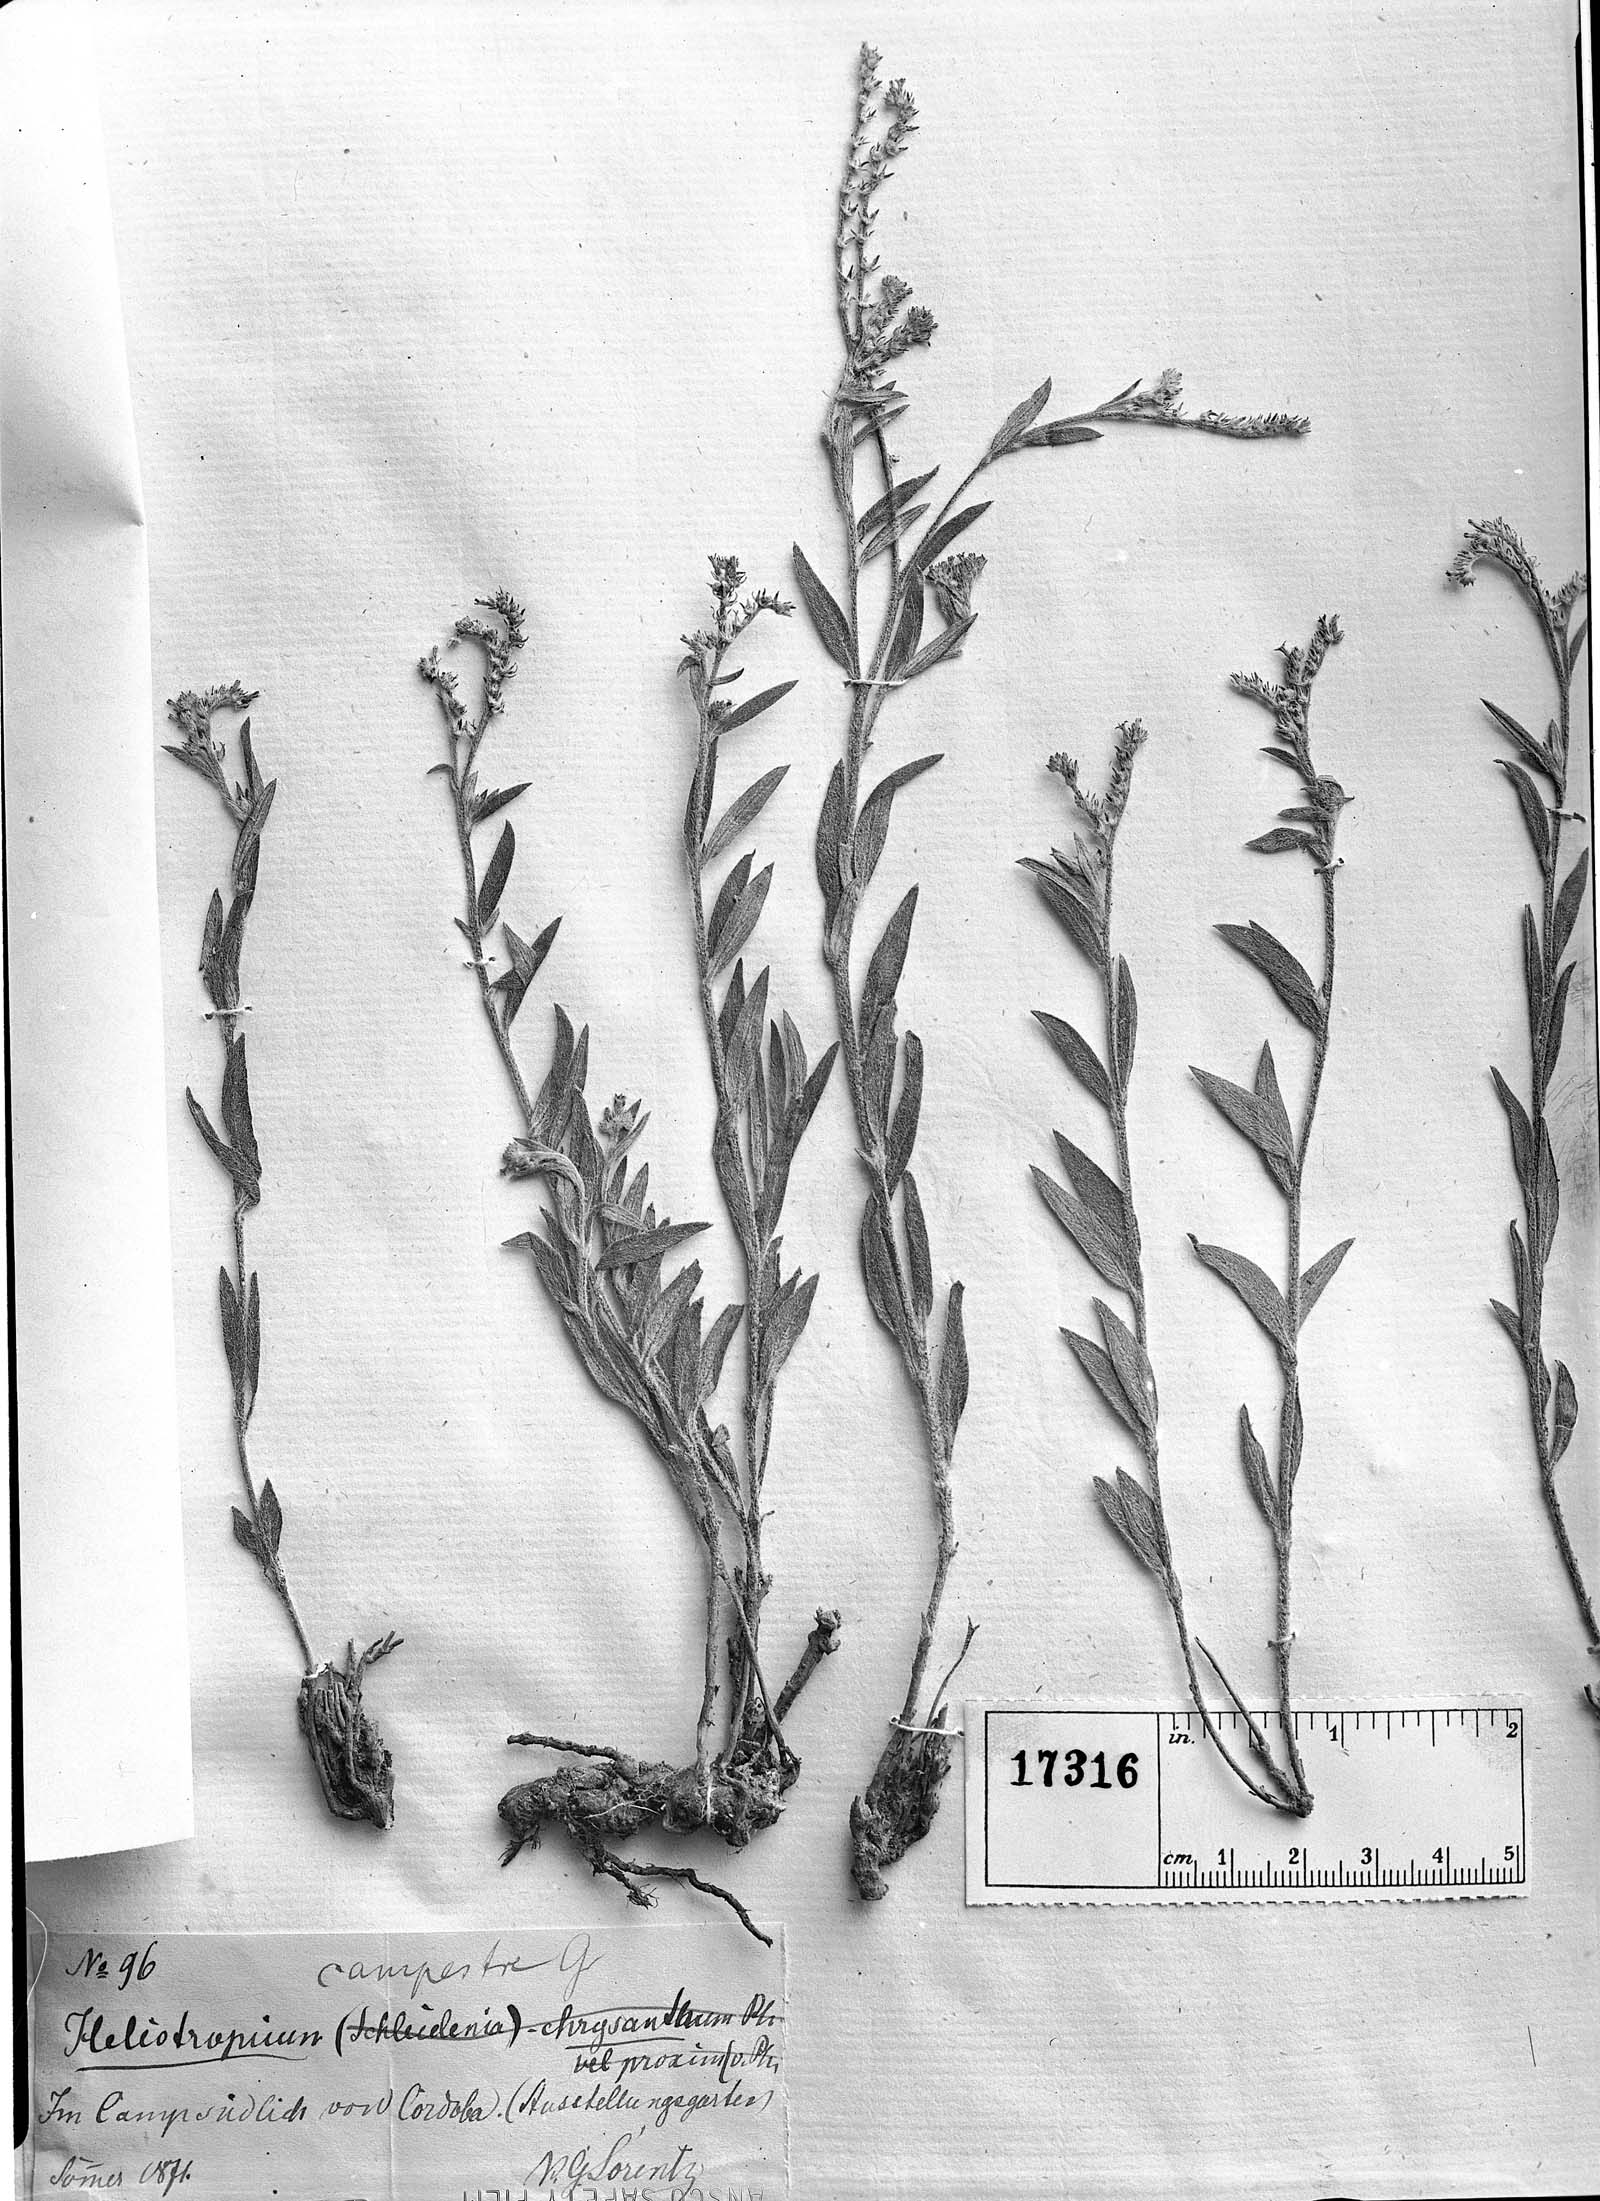 Heliotropium campestre image